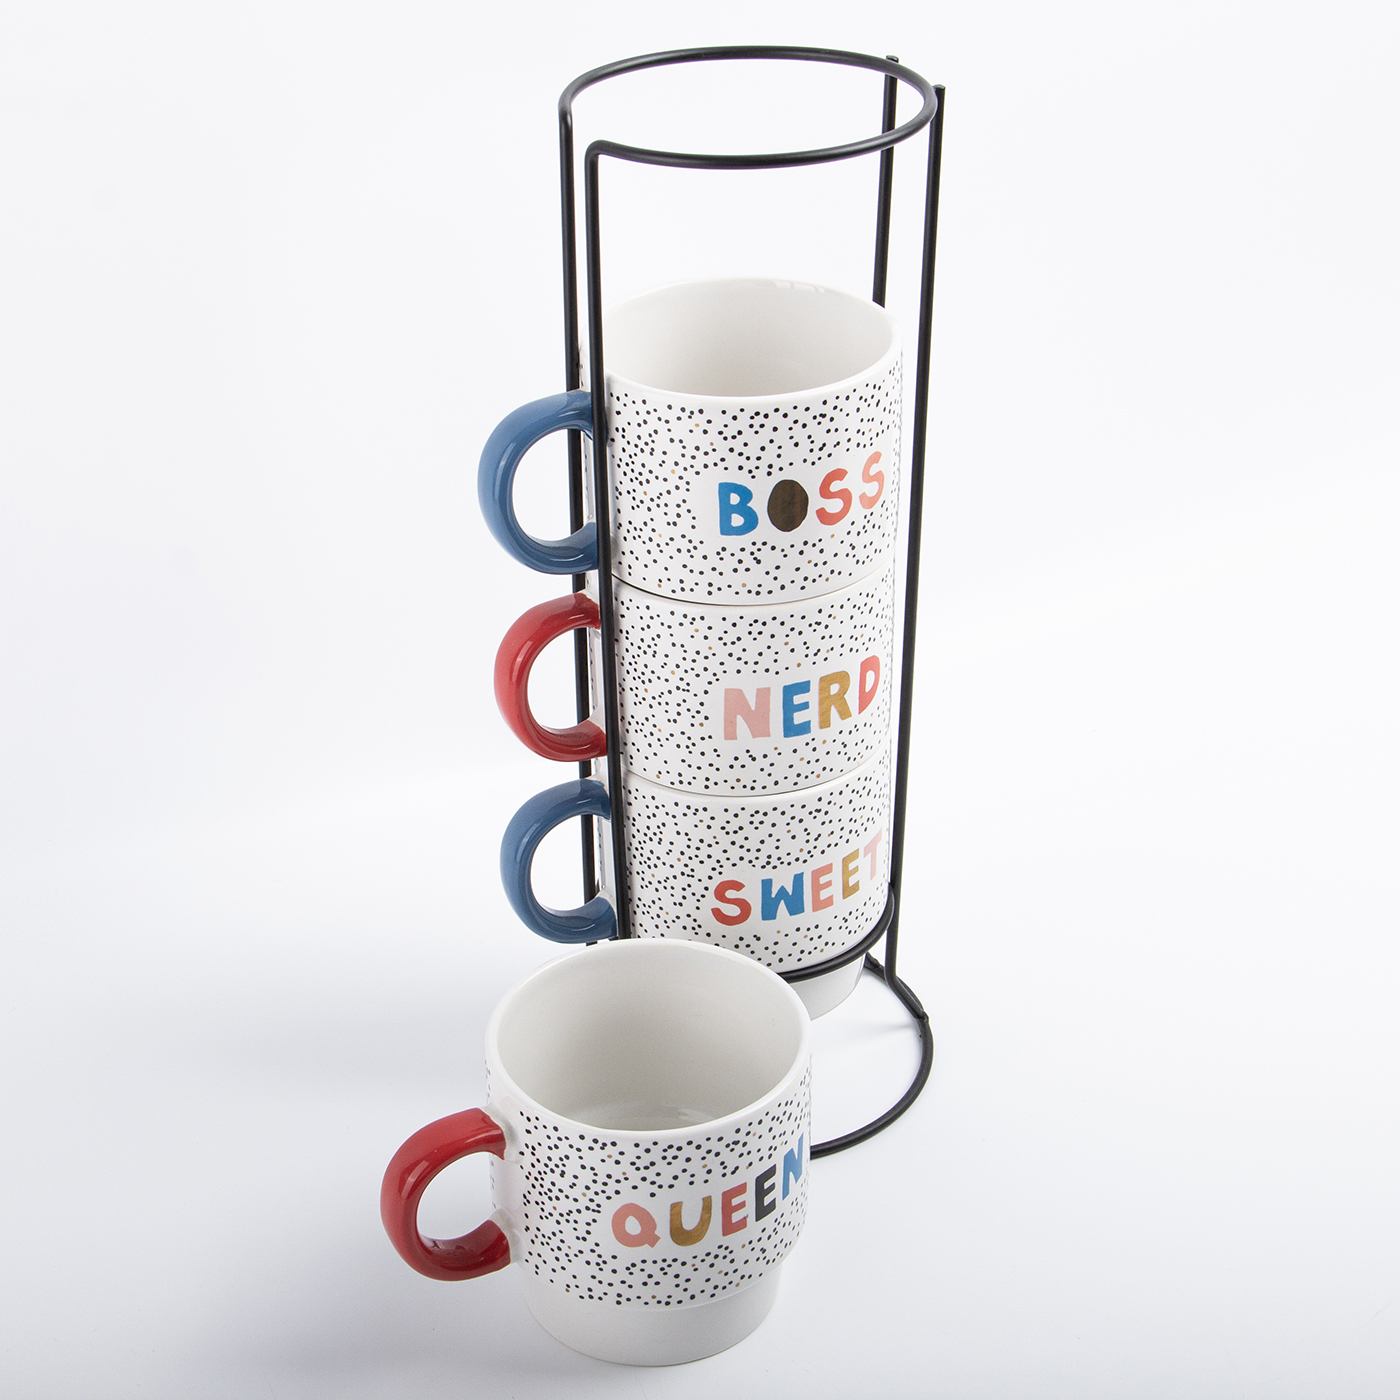 Ceramic Stacking Mug Set With Stand2